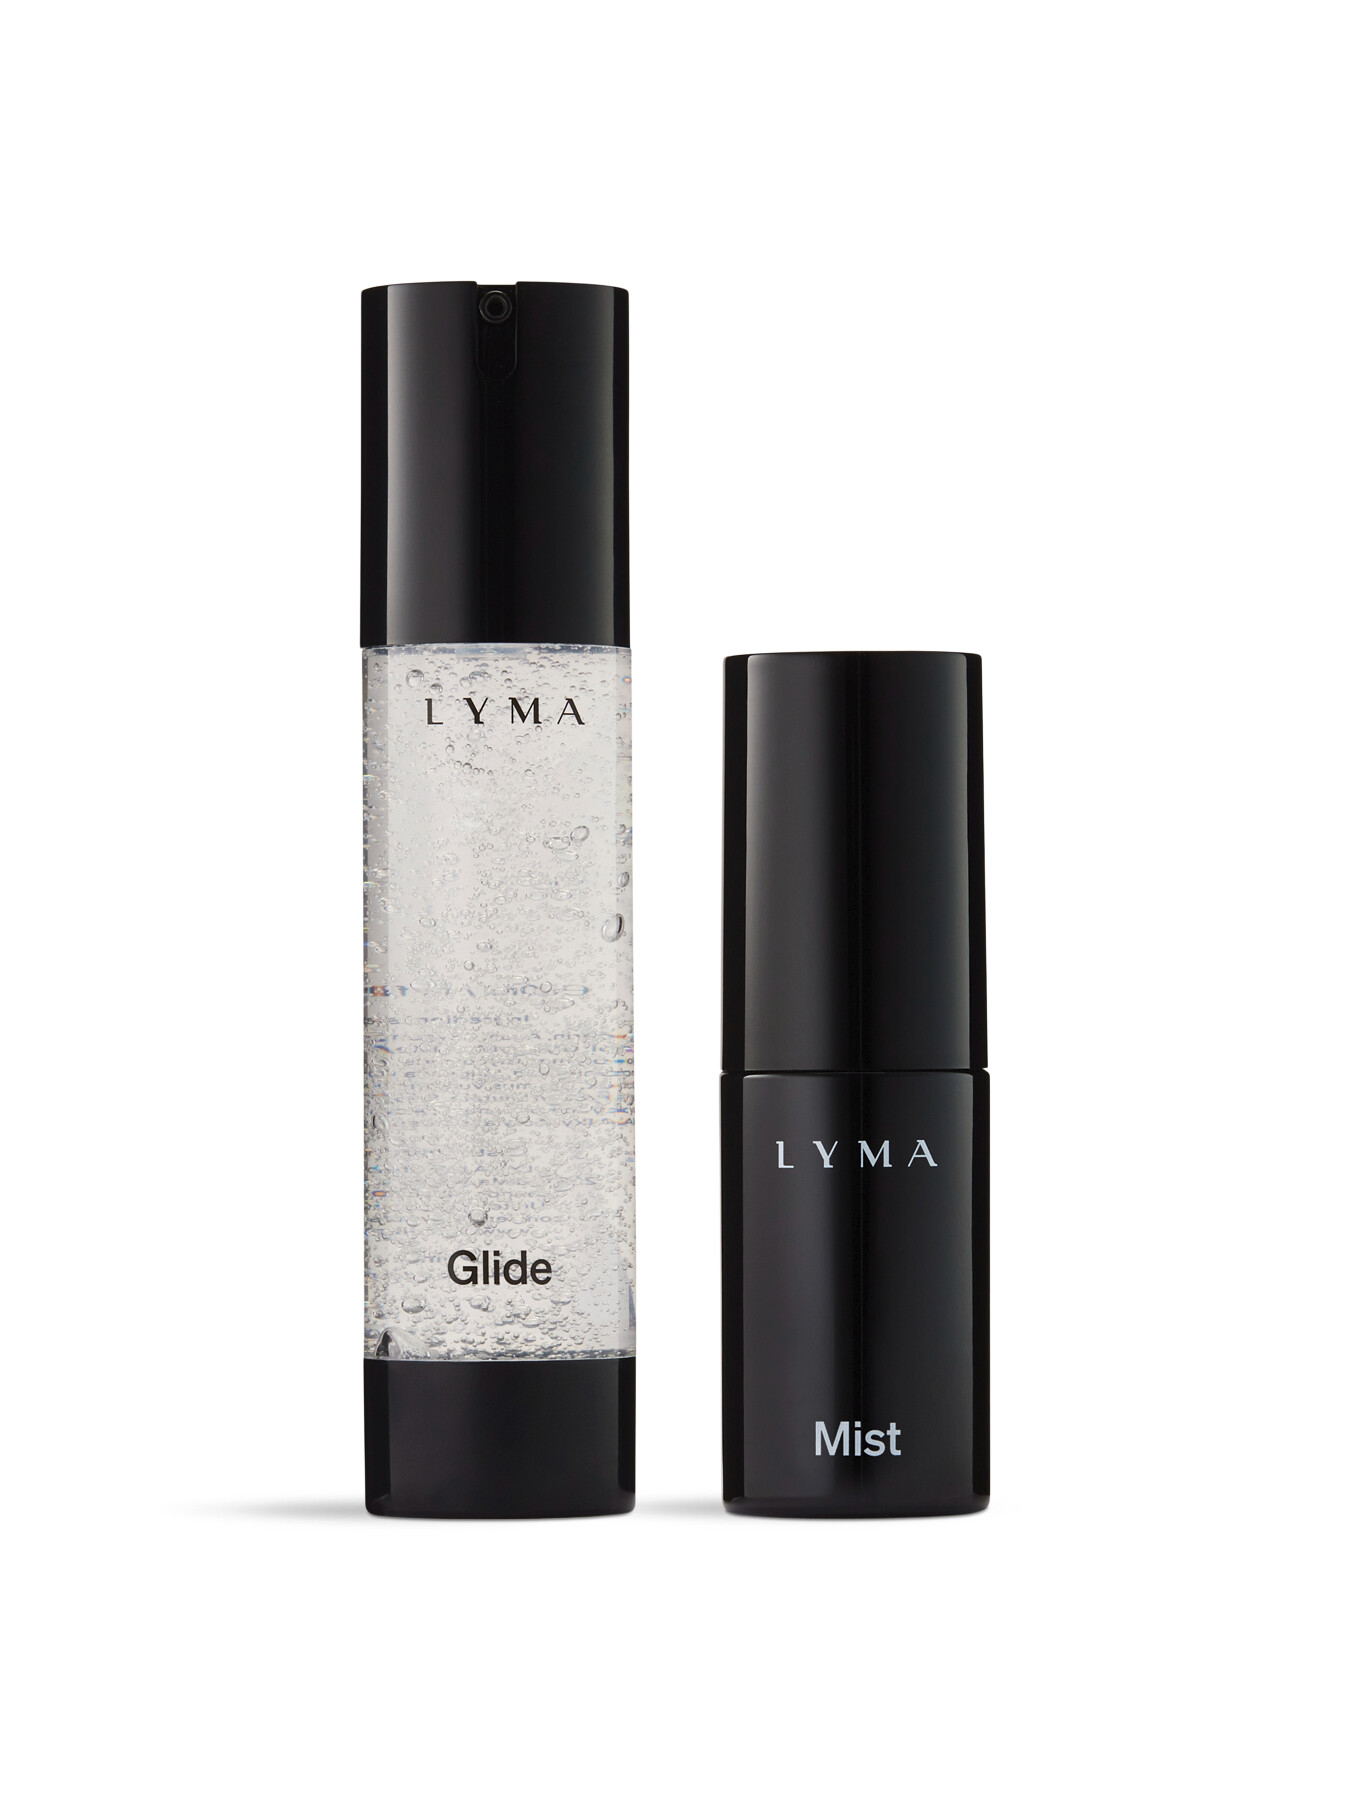 Lyma Laser Oxygen Mist & Glide Refill 30 Days In White